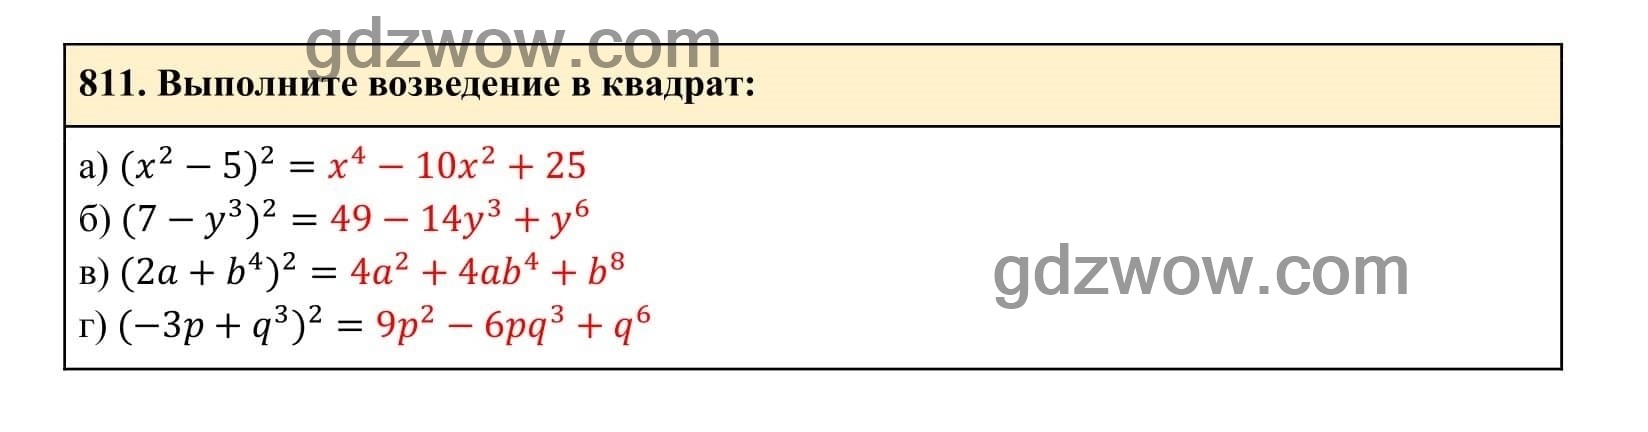 Упражнение 811 - ГДЗ по Алгебре 7 класс Учебник Макарычев (решебник) - GDZwow